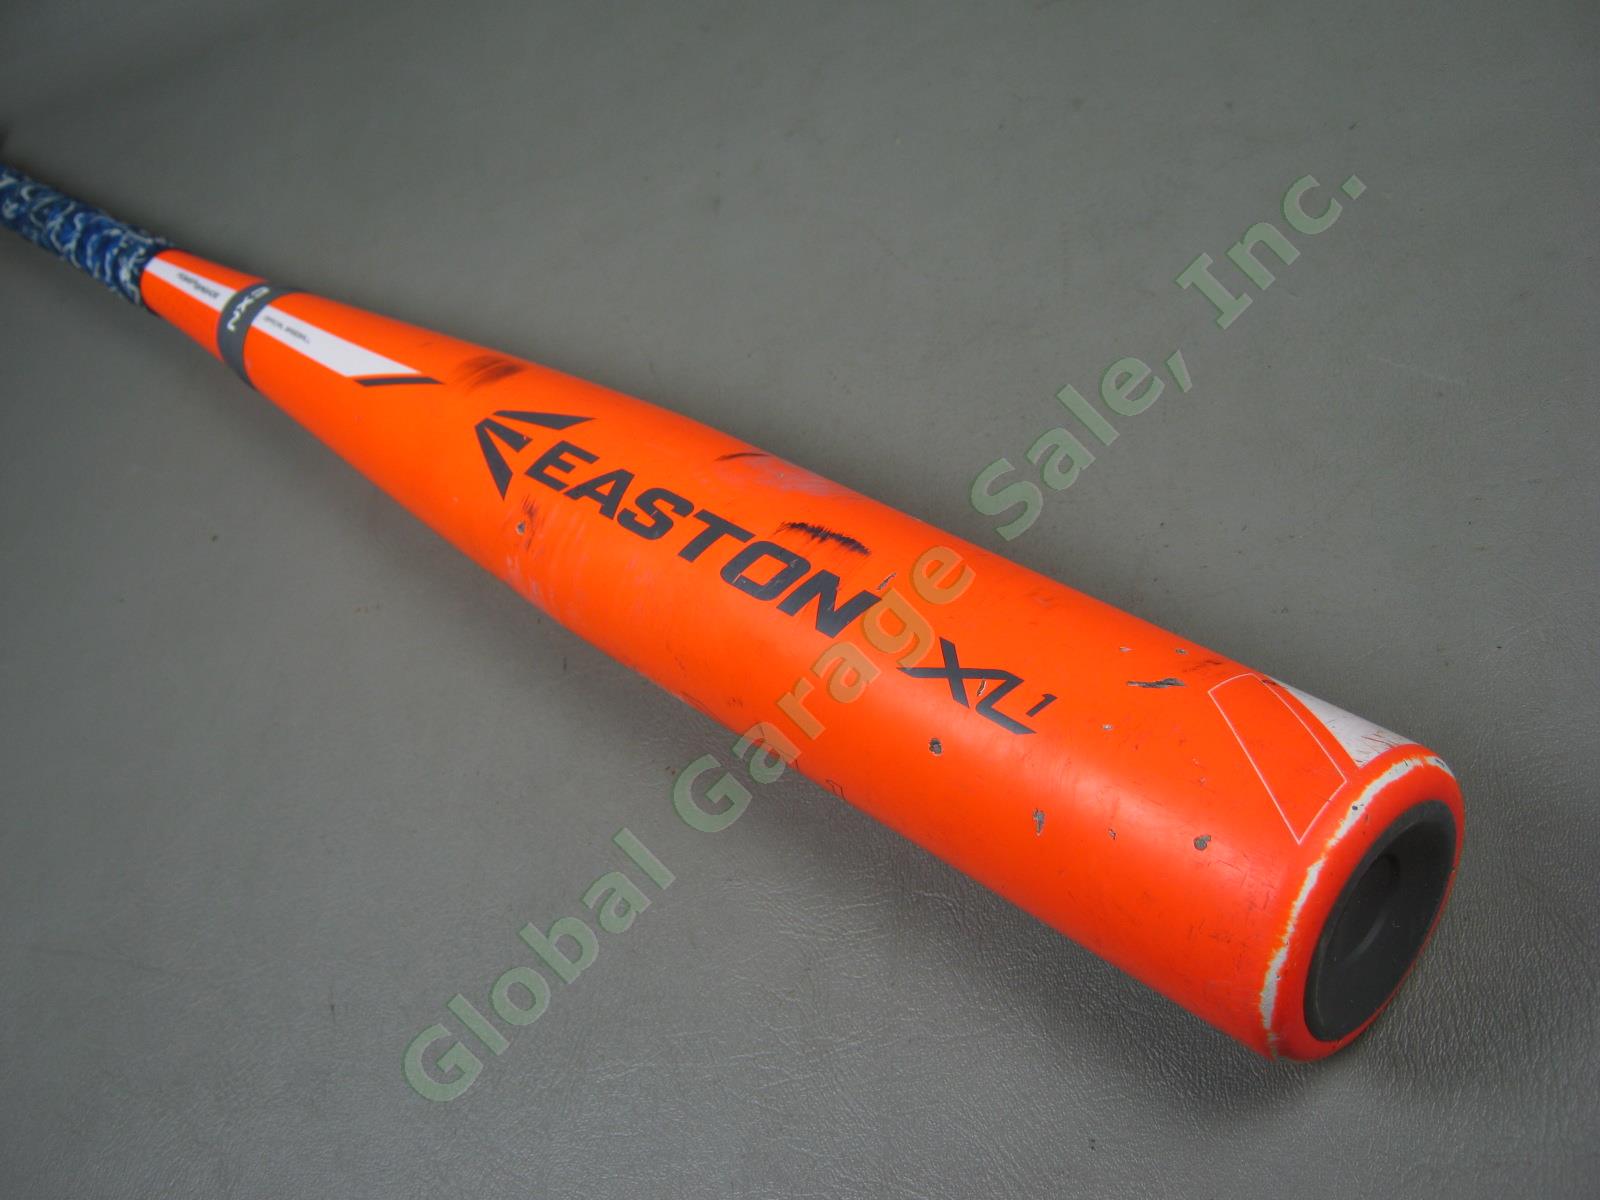 2015 Easton XL1 Power Brigade BB15X1 32/29 oz -3 BBCOR Composite Baseball Bat NR 1